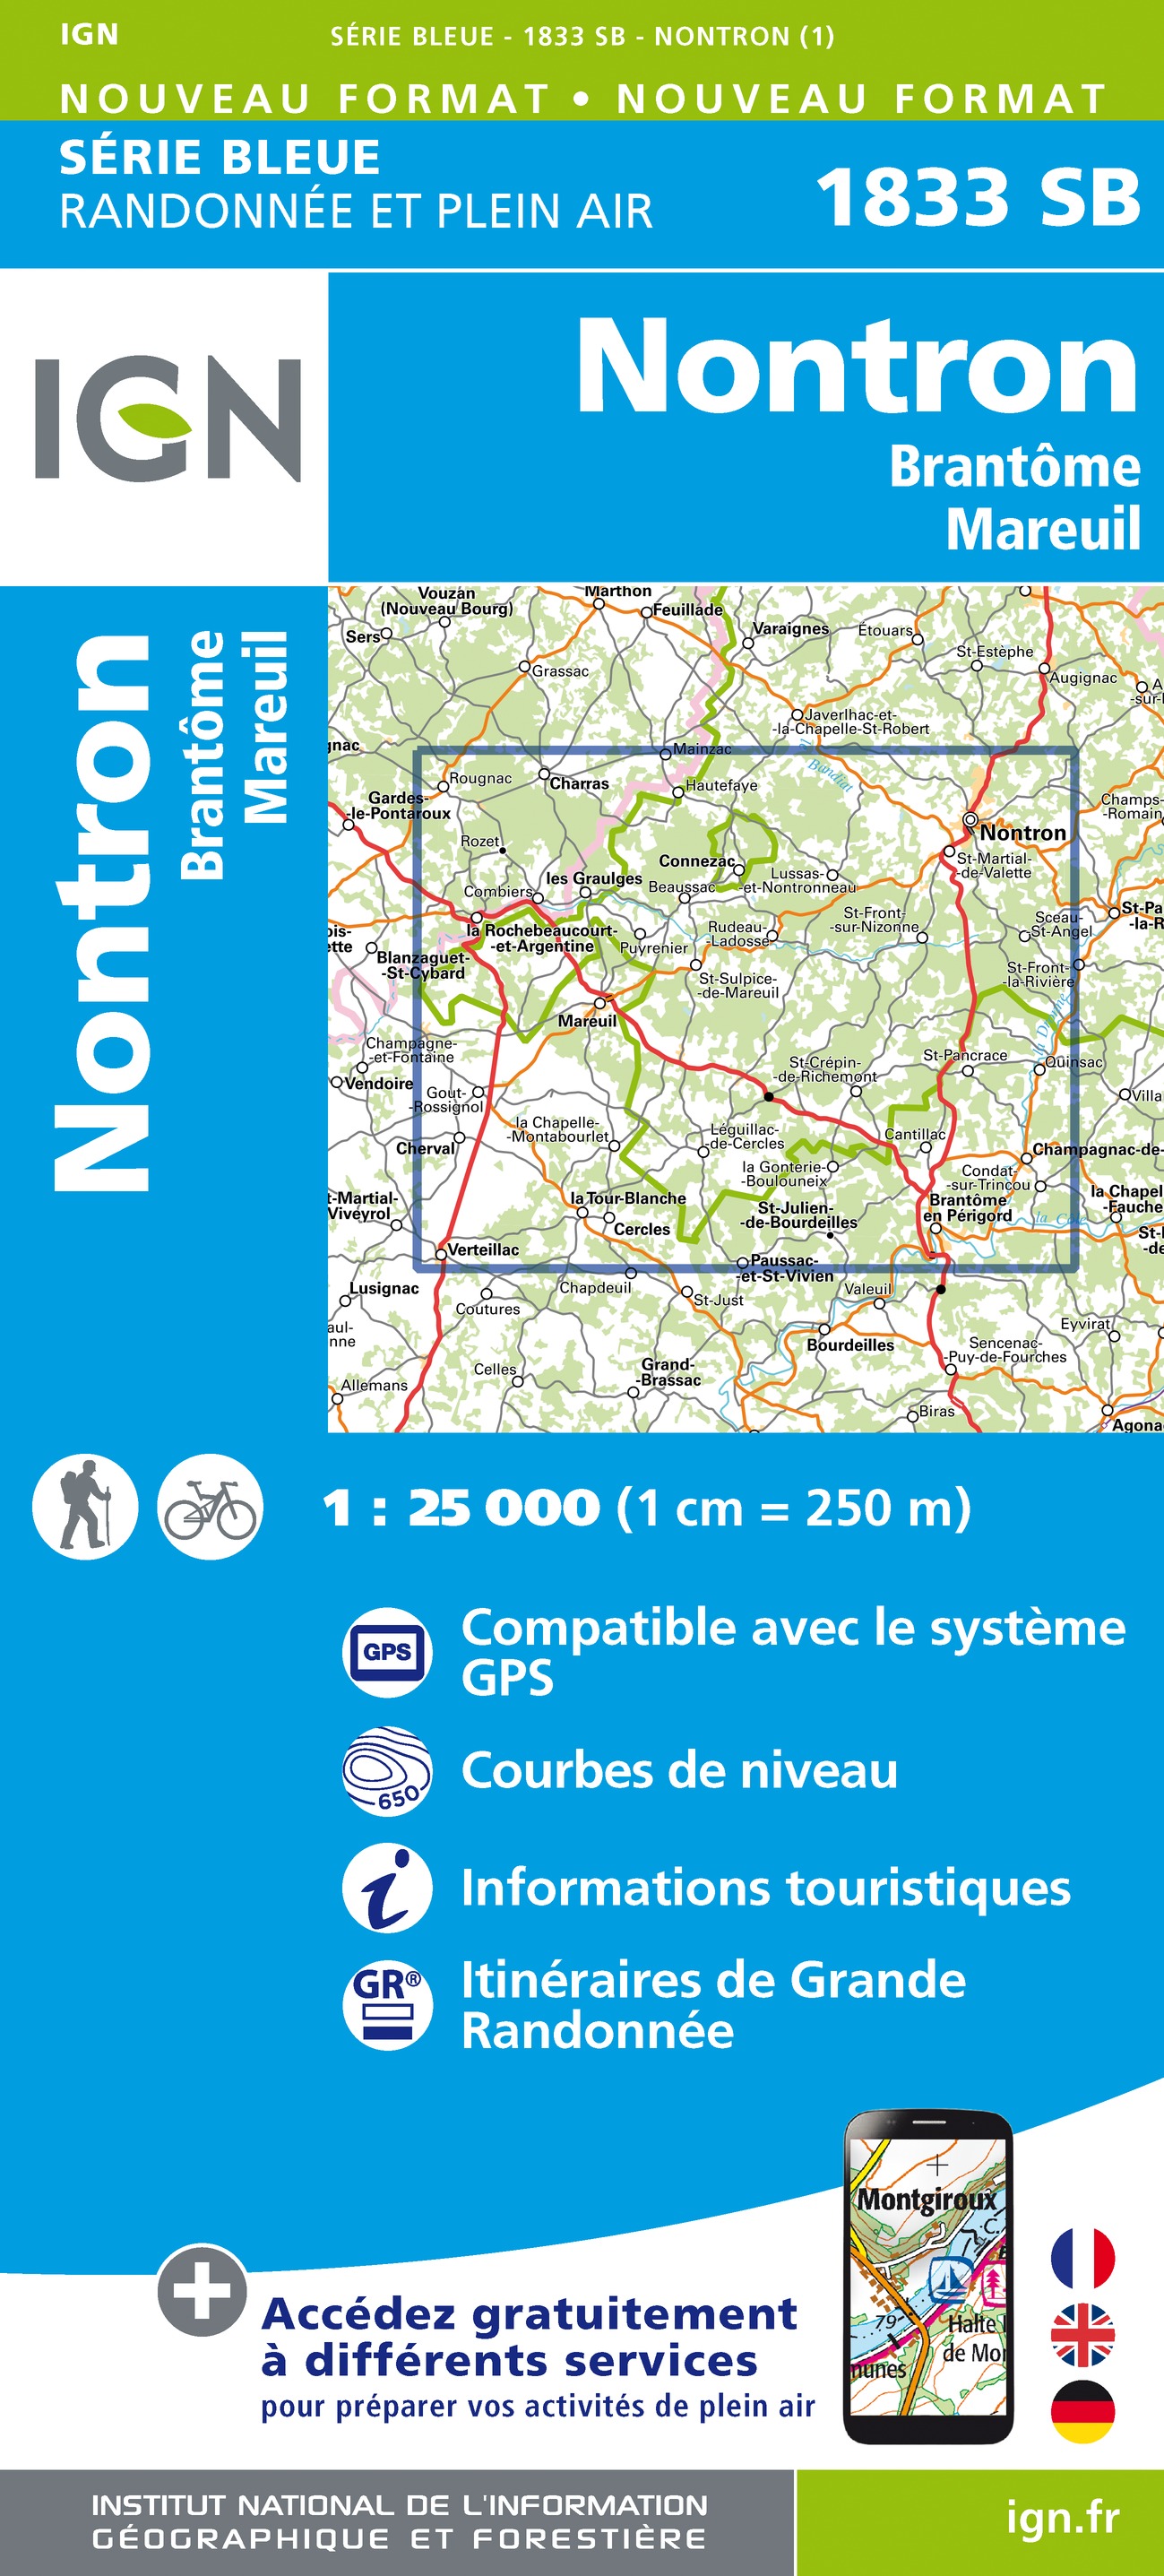 Online bestellen: Wandelkaart - Topografische kaart 1833SB Nontron, Brantôme, Mareuil | IGN - Institut Géographique National